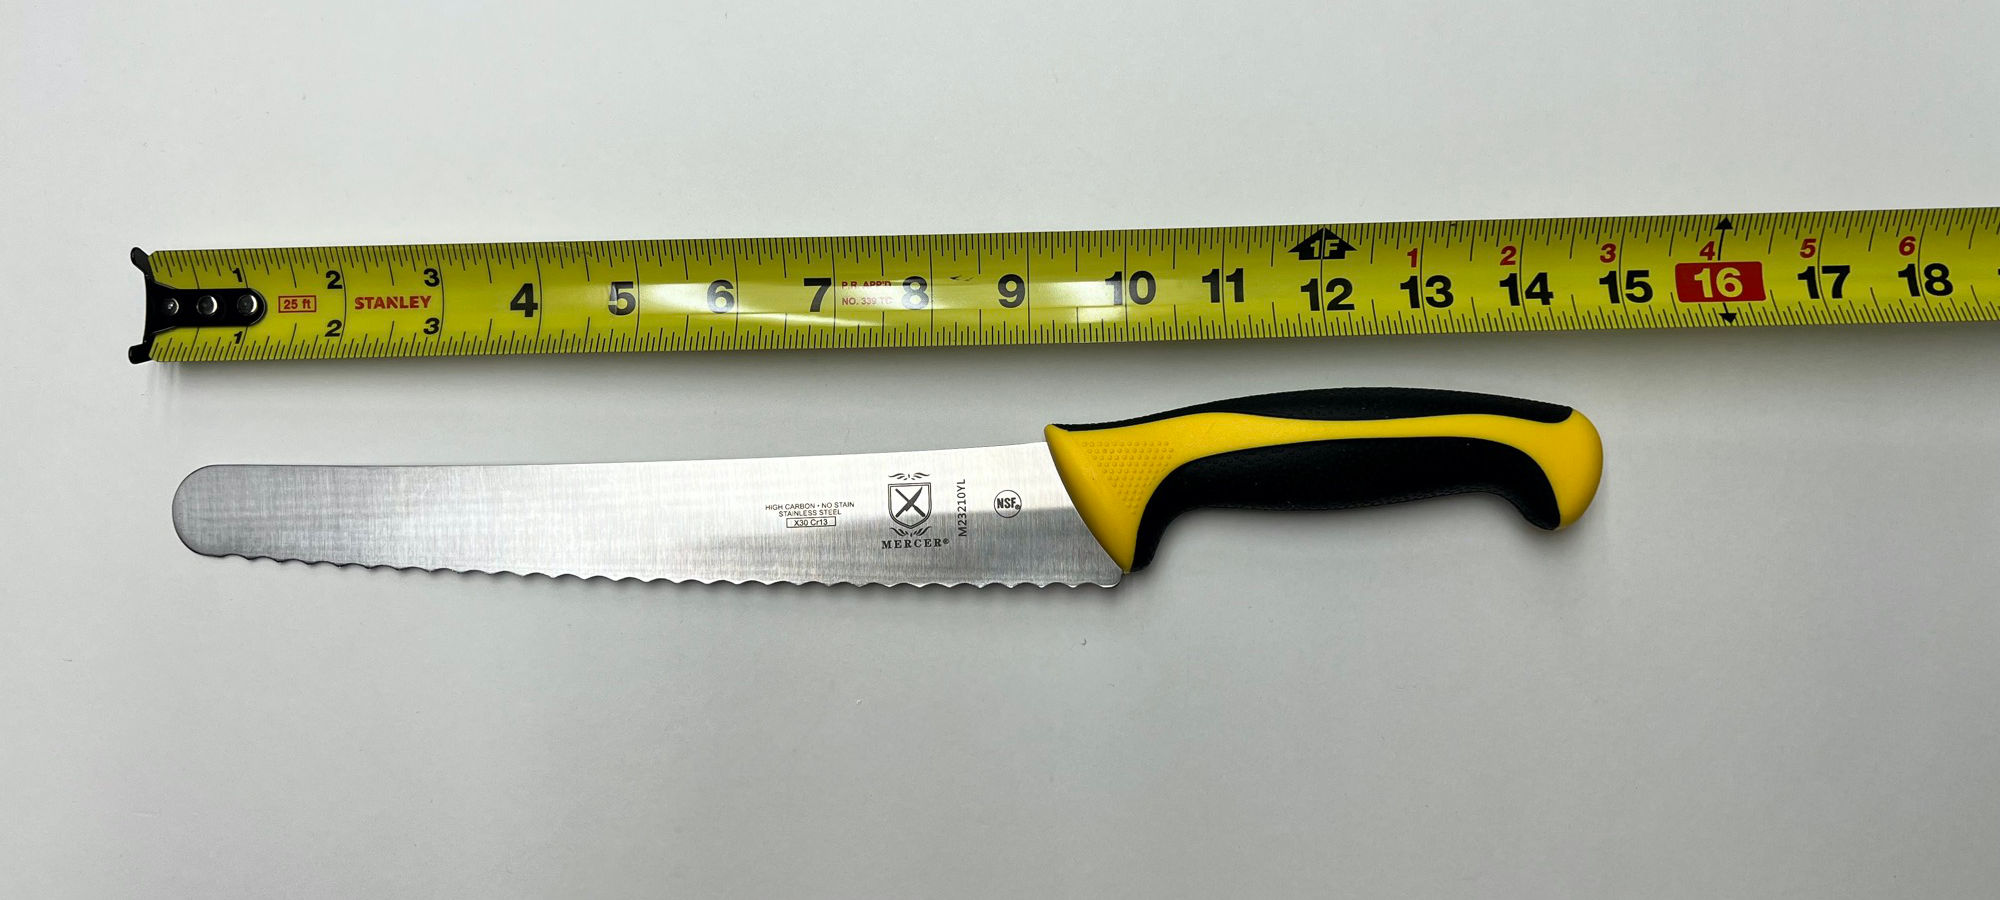 Bread Knife 15 inch